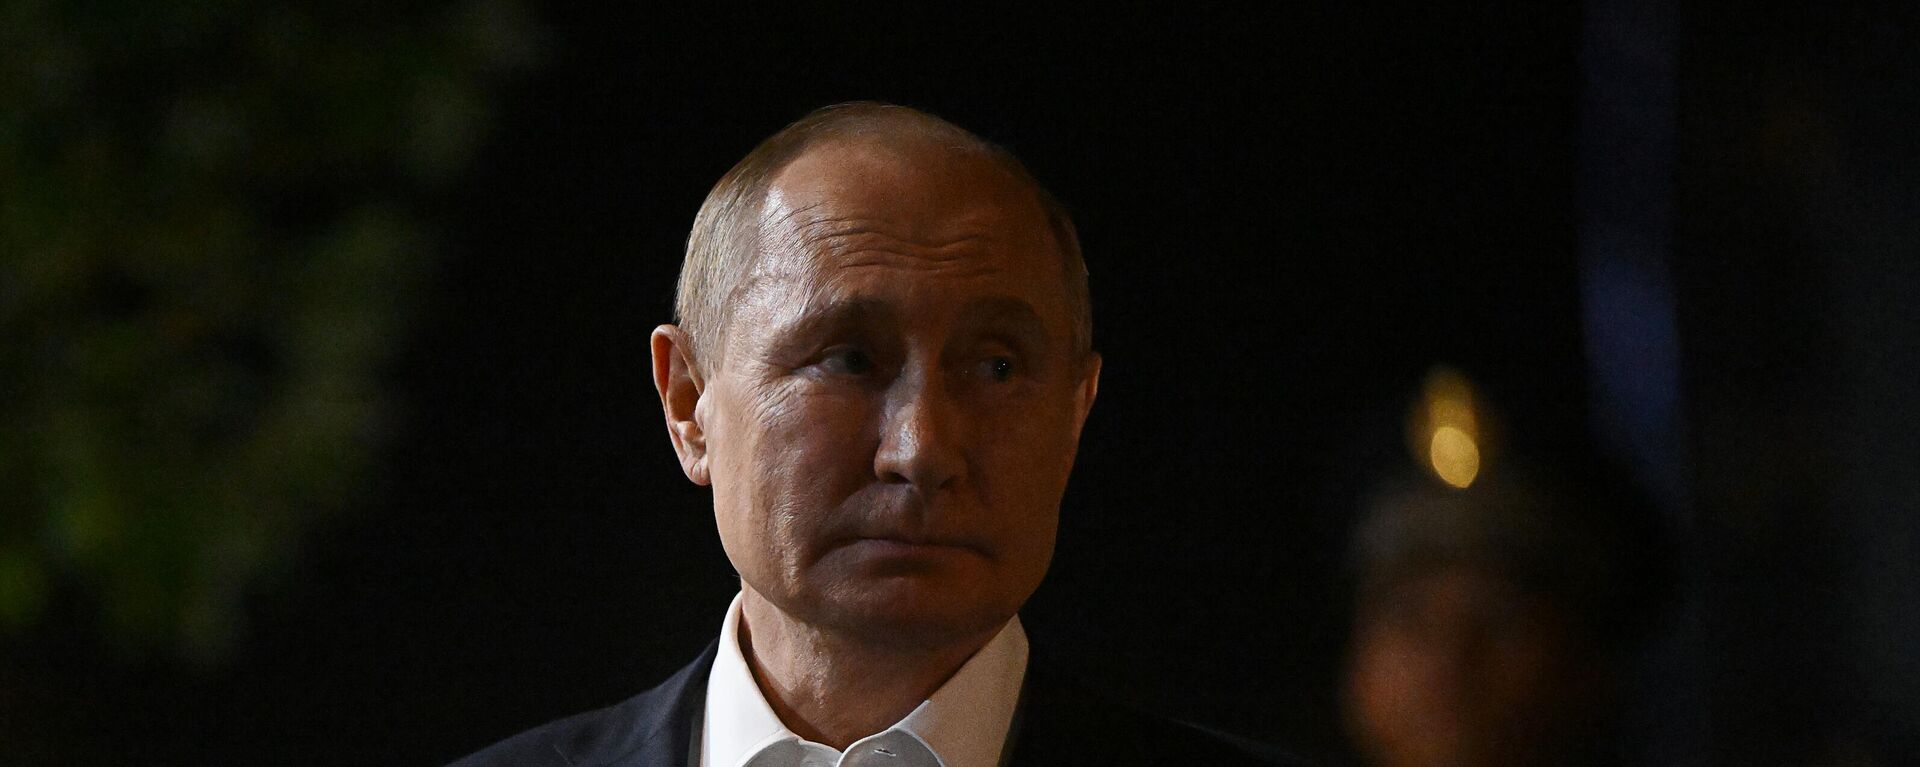 Руски председник Владимир Путин на самиту ШОС у Самарканду - Sputnik Србија, 1920, 07.10.2022